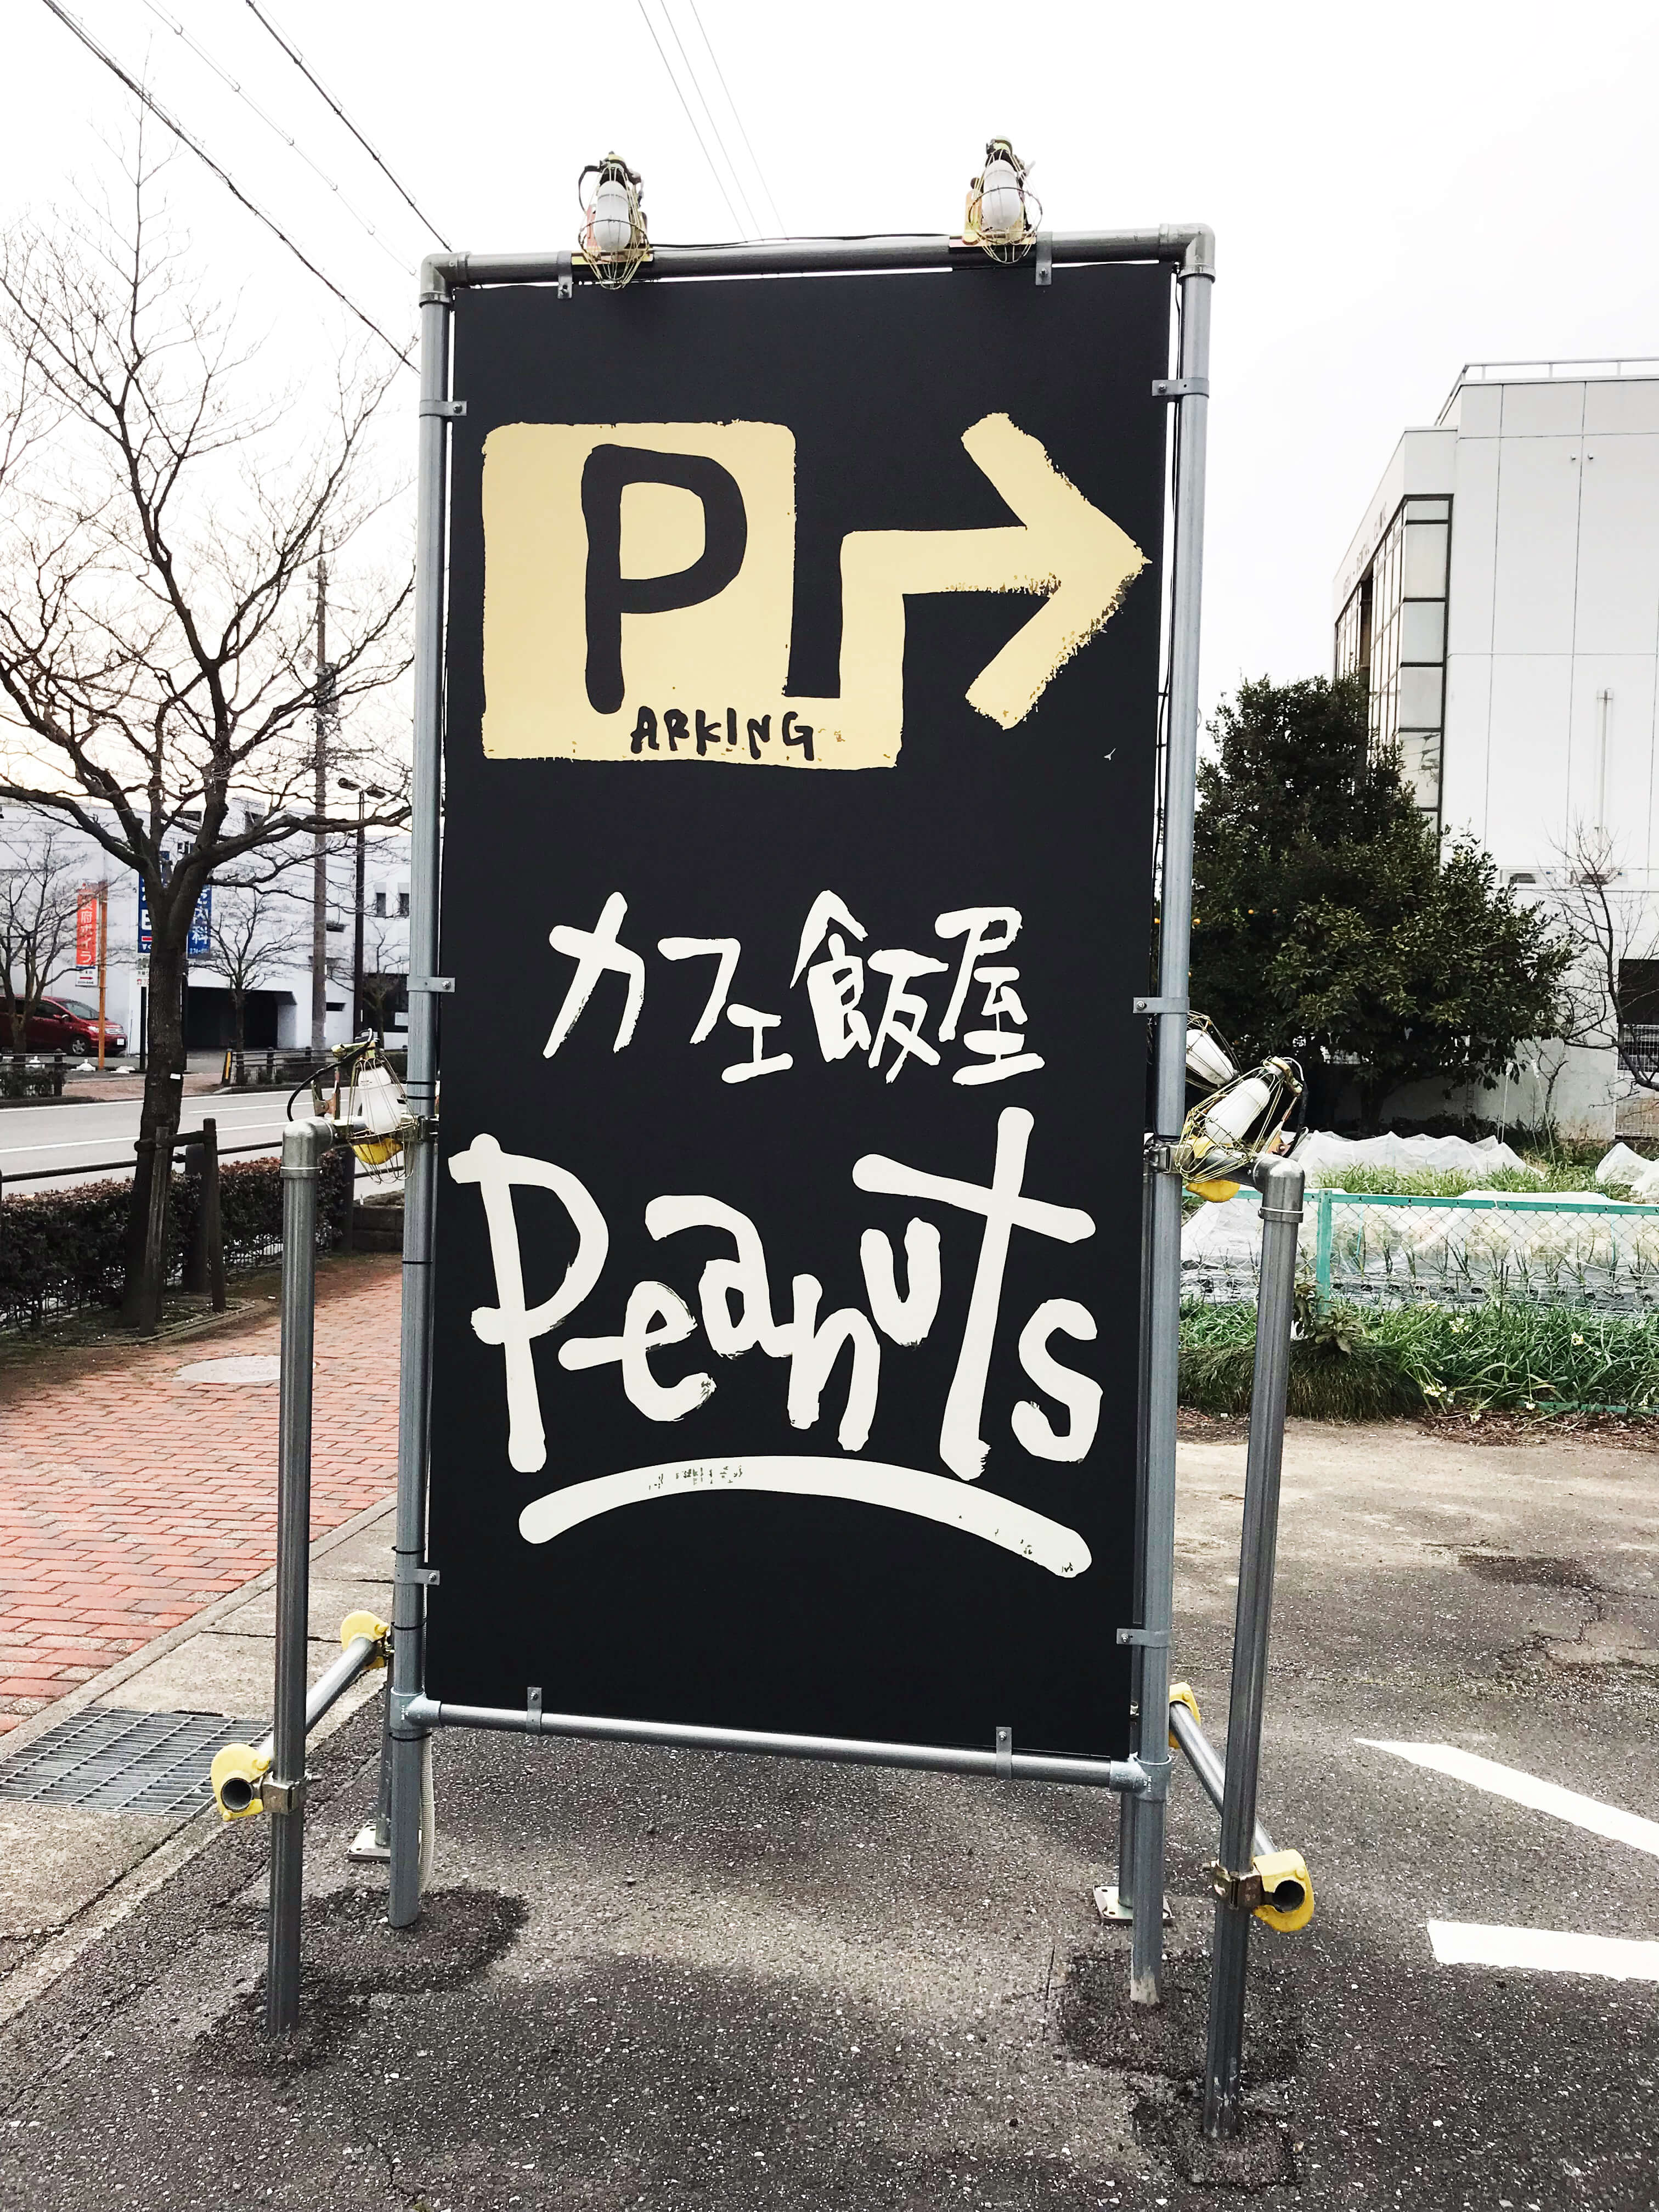 300313 1 - 【岐阜県 大垣市】新しく飲食店の店舗オープンに伴い、店舗外観及び内装の看板施工を担当しました。